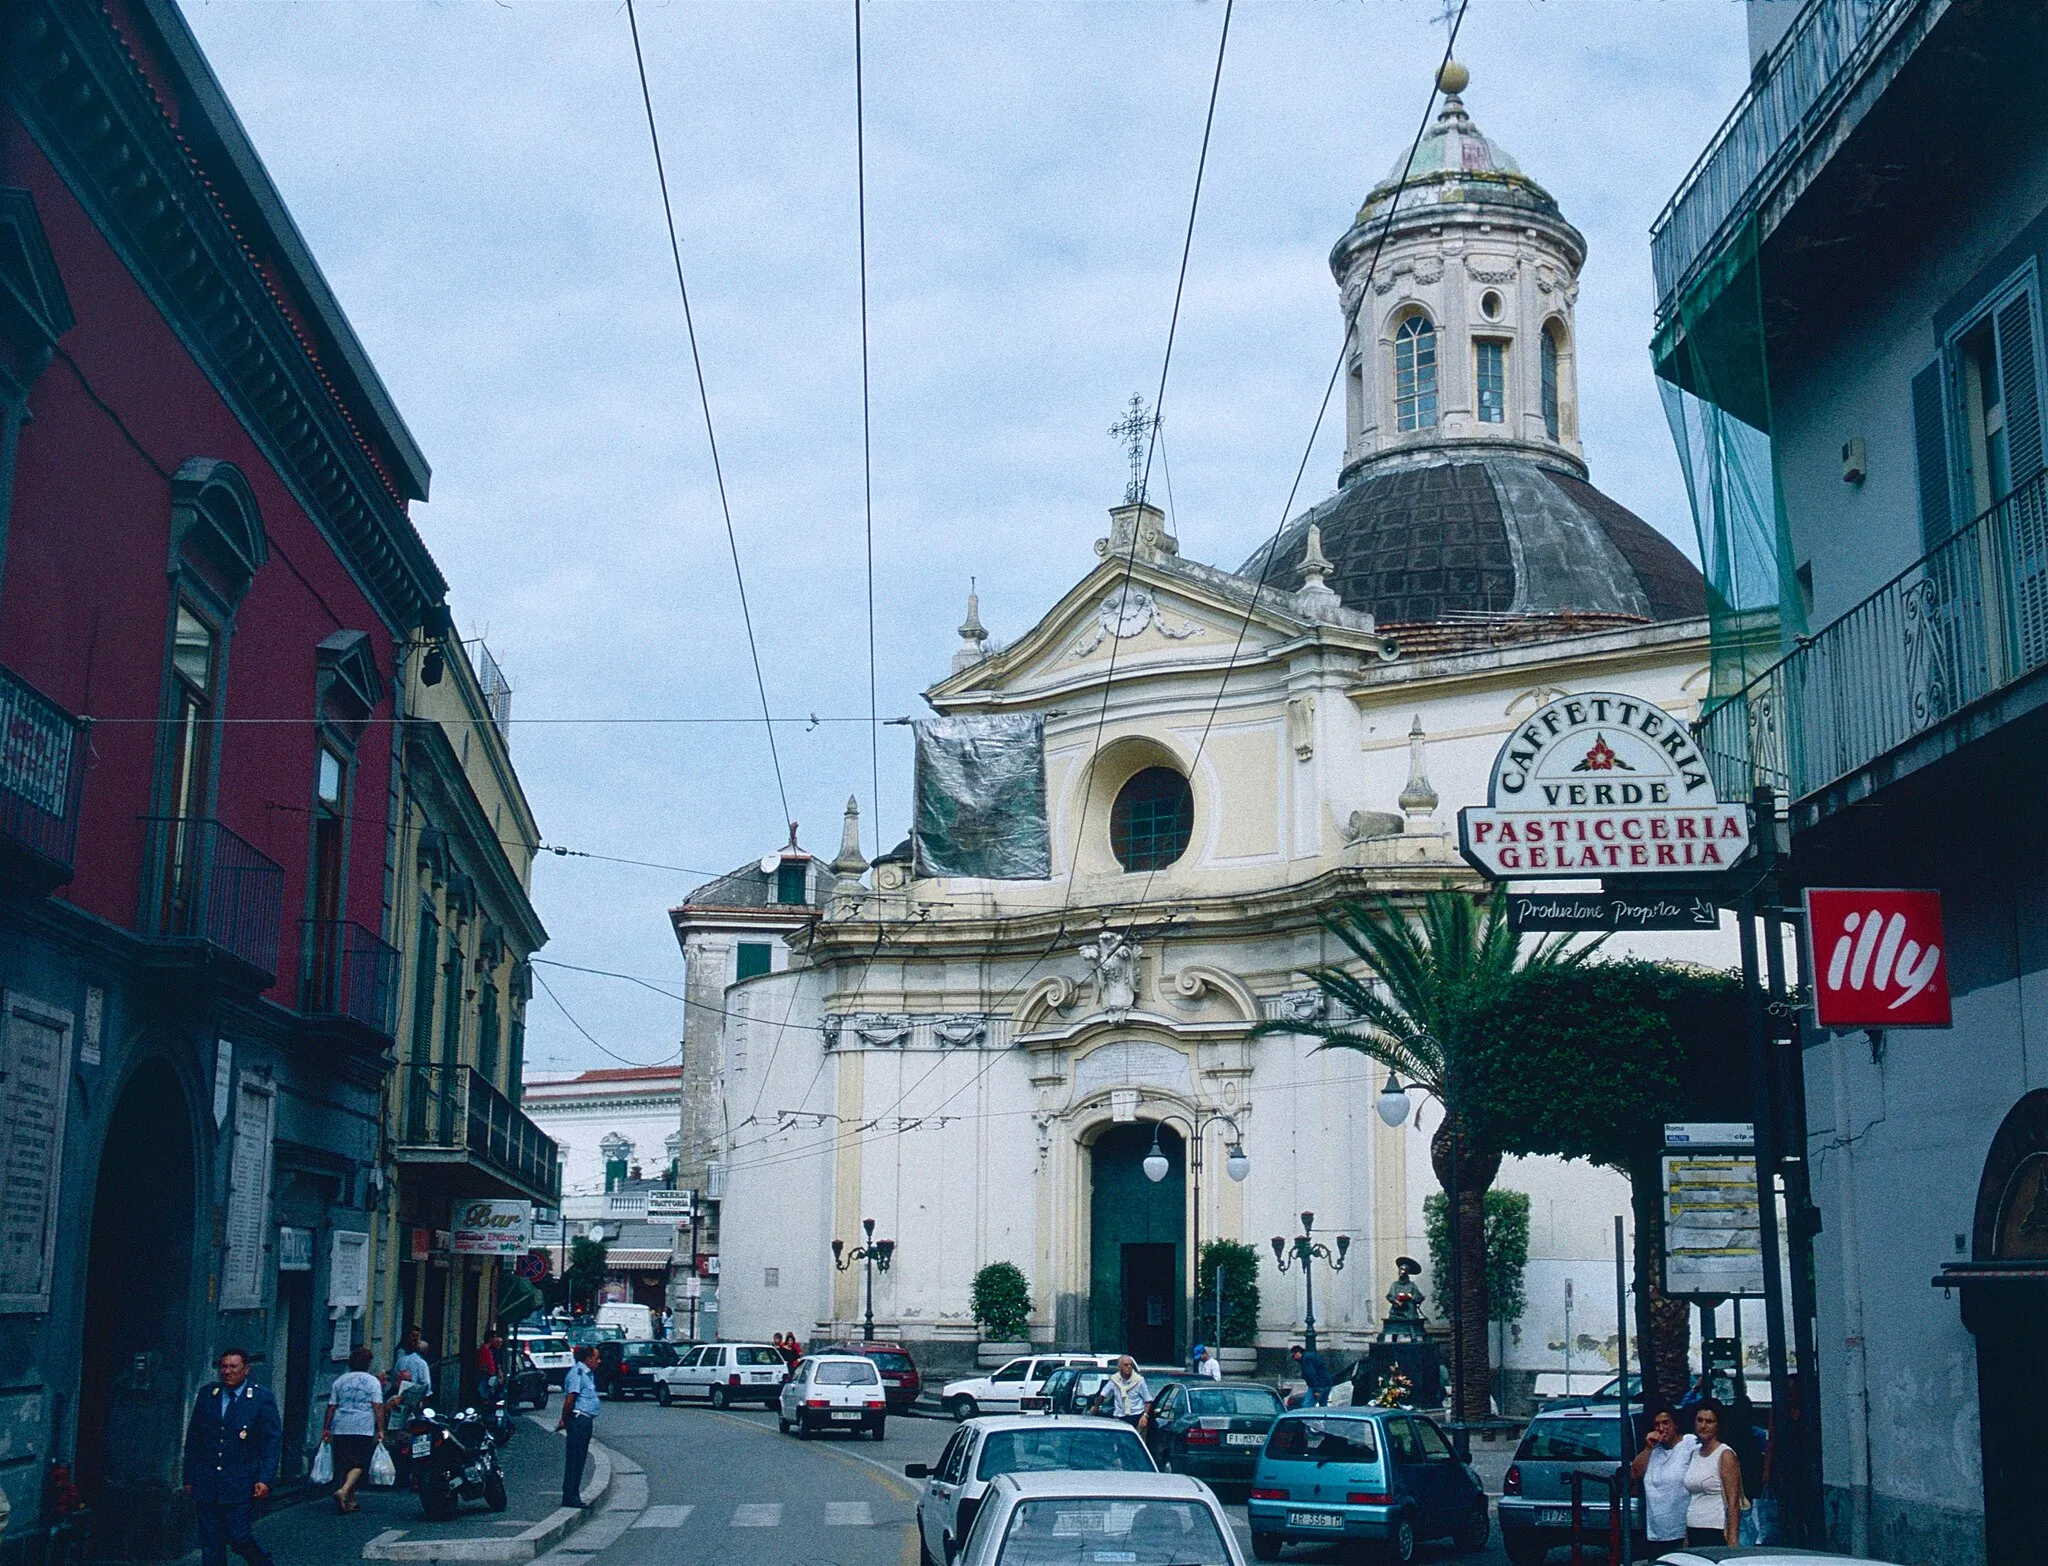 Image of Melito di Napoli